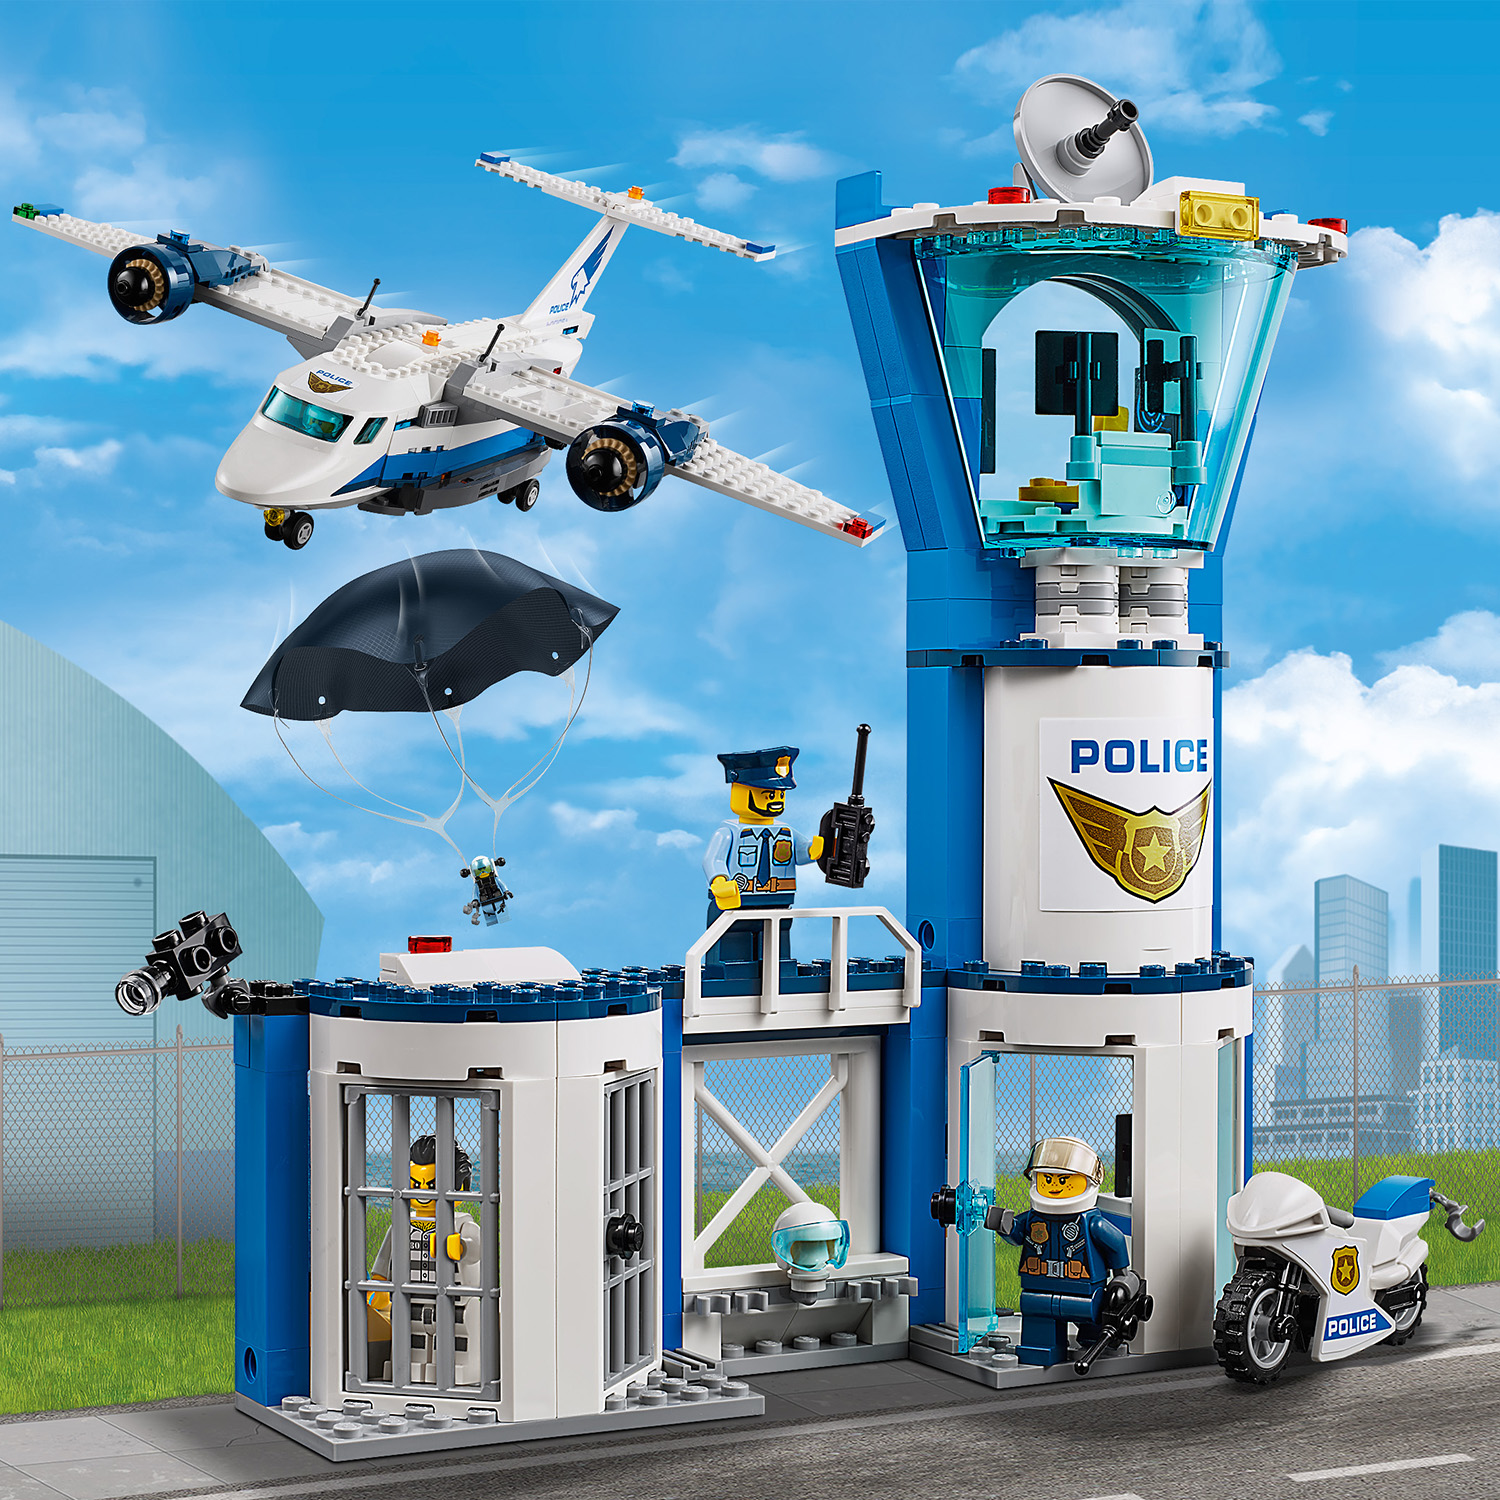 LEGO City Polizei Fliegerstützpunkt - 60210